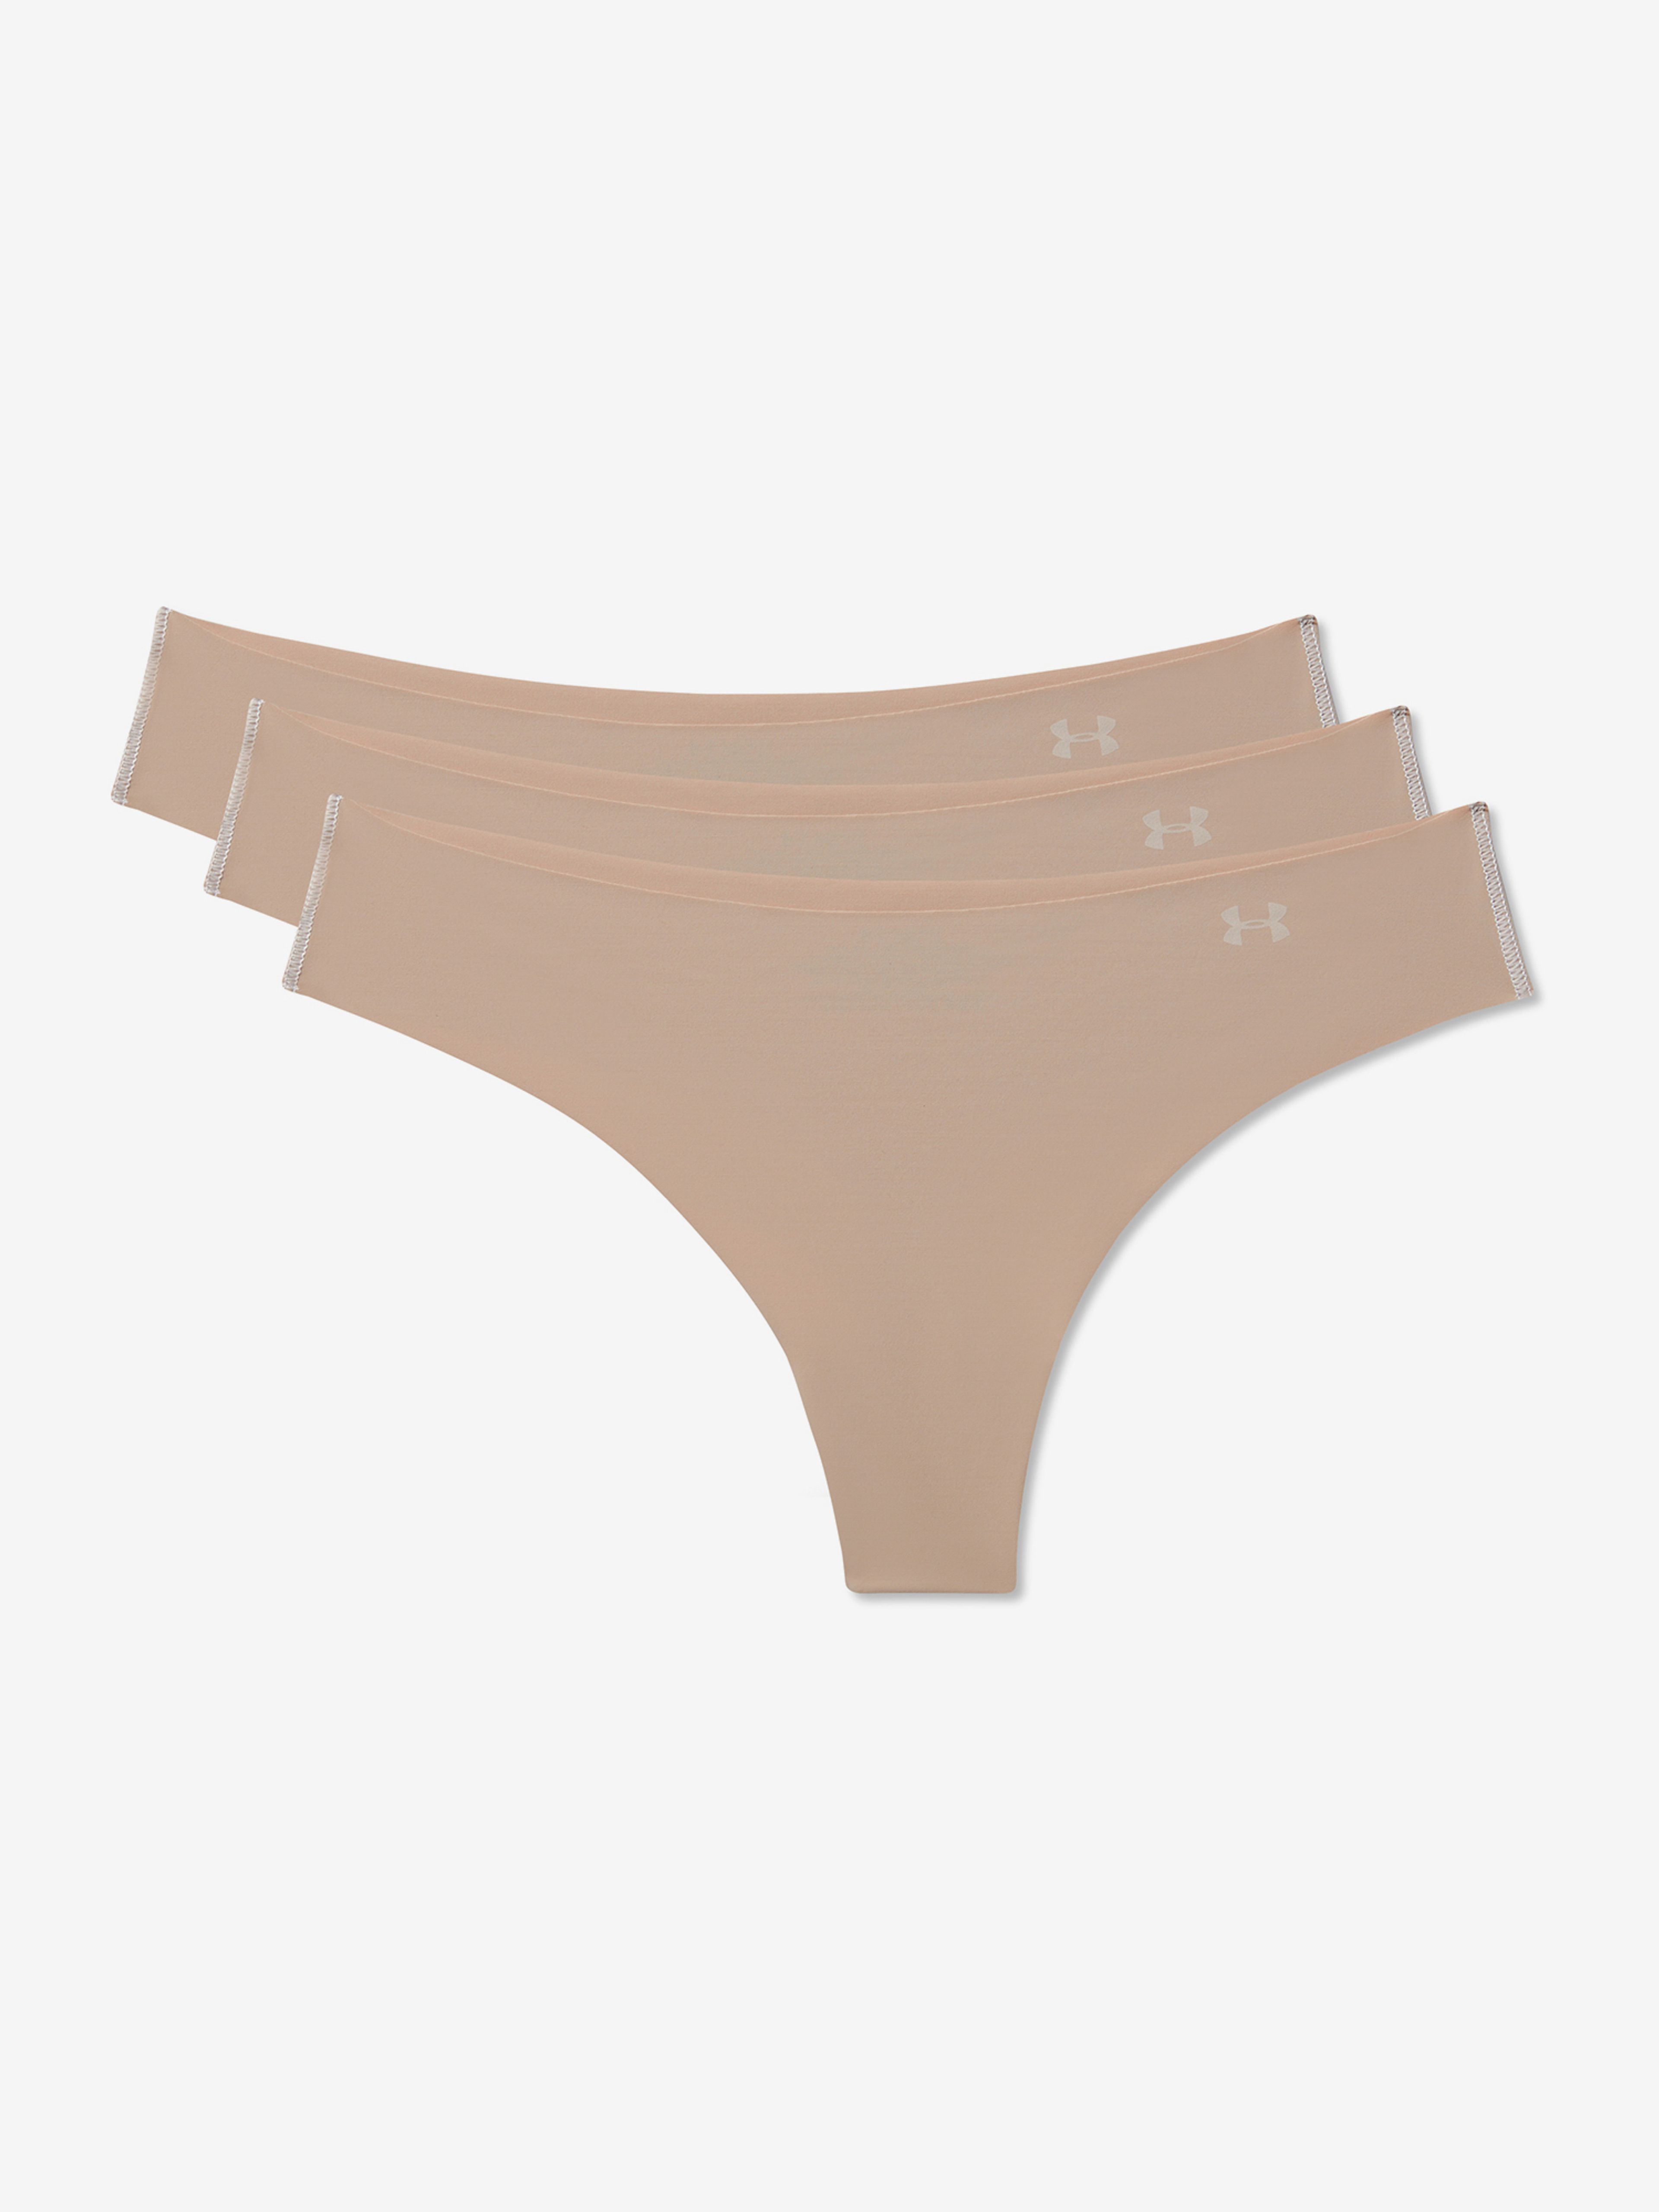  PS Thong 3Pack Print, Pink - women's underwear - UNDER  ARMOUR - 19.29 € - outdoorové oblečení a vybavení shop